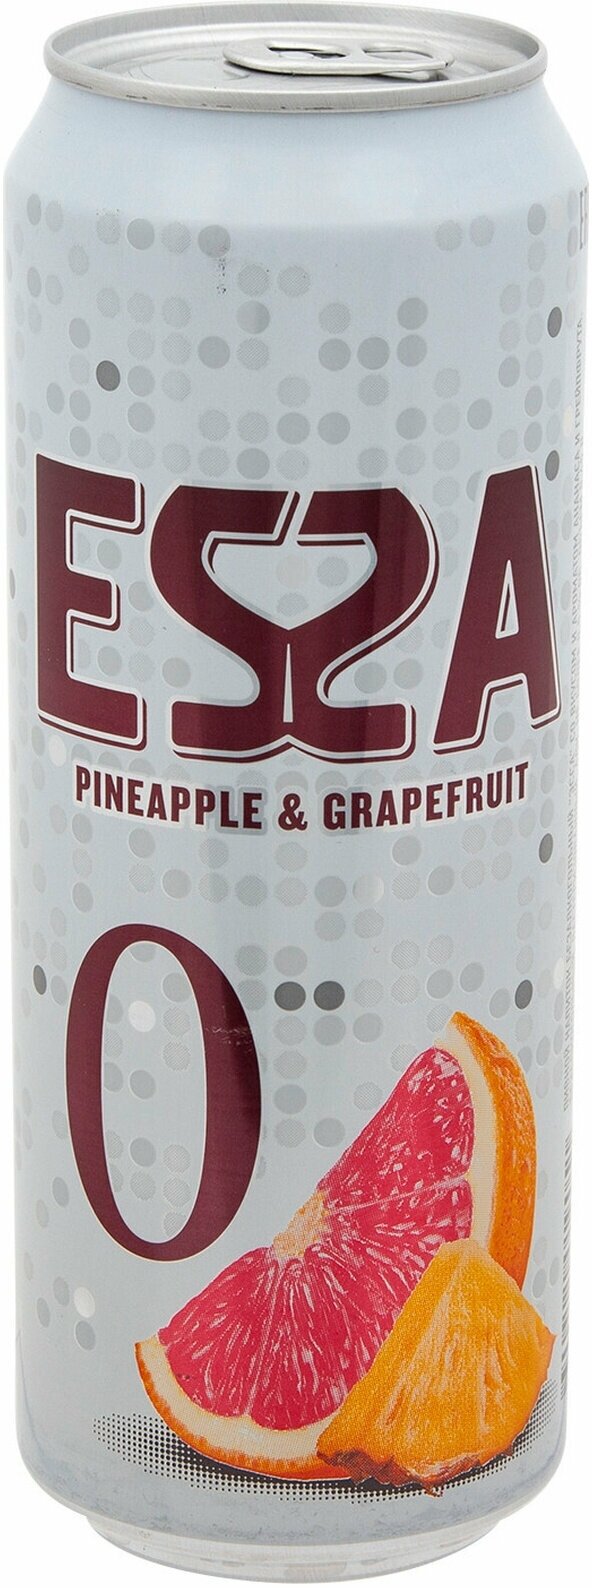 Напиток пивной безалкогольный ESSA со вкусом ананаса и грейпфрута, не более 0,5%, 0.45 л - 6 шт.